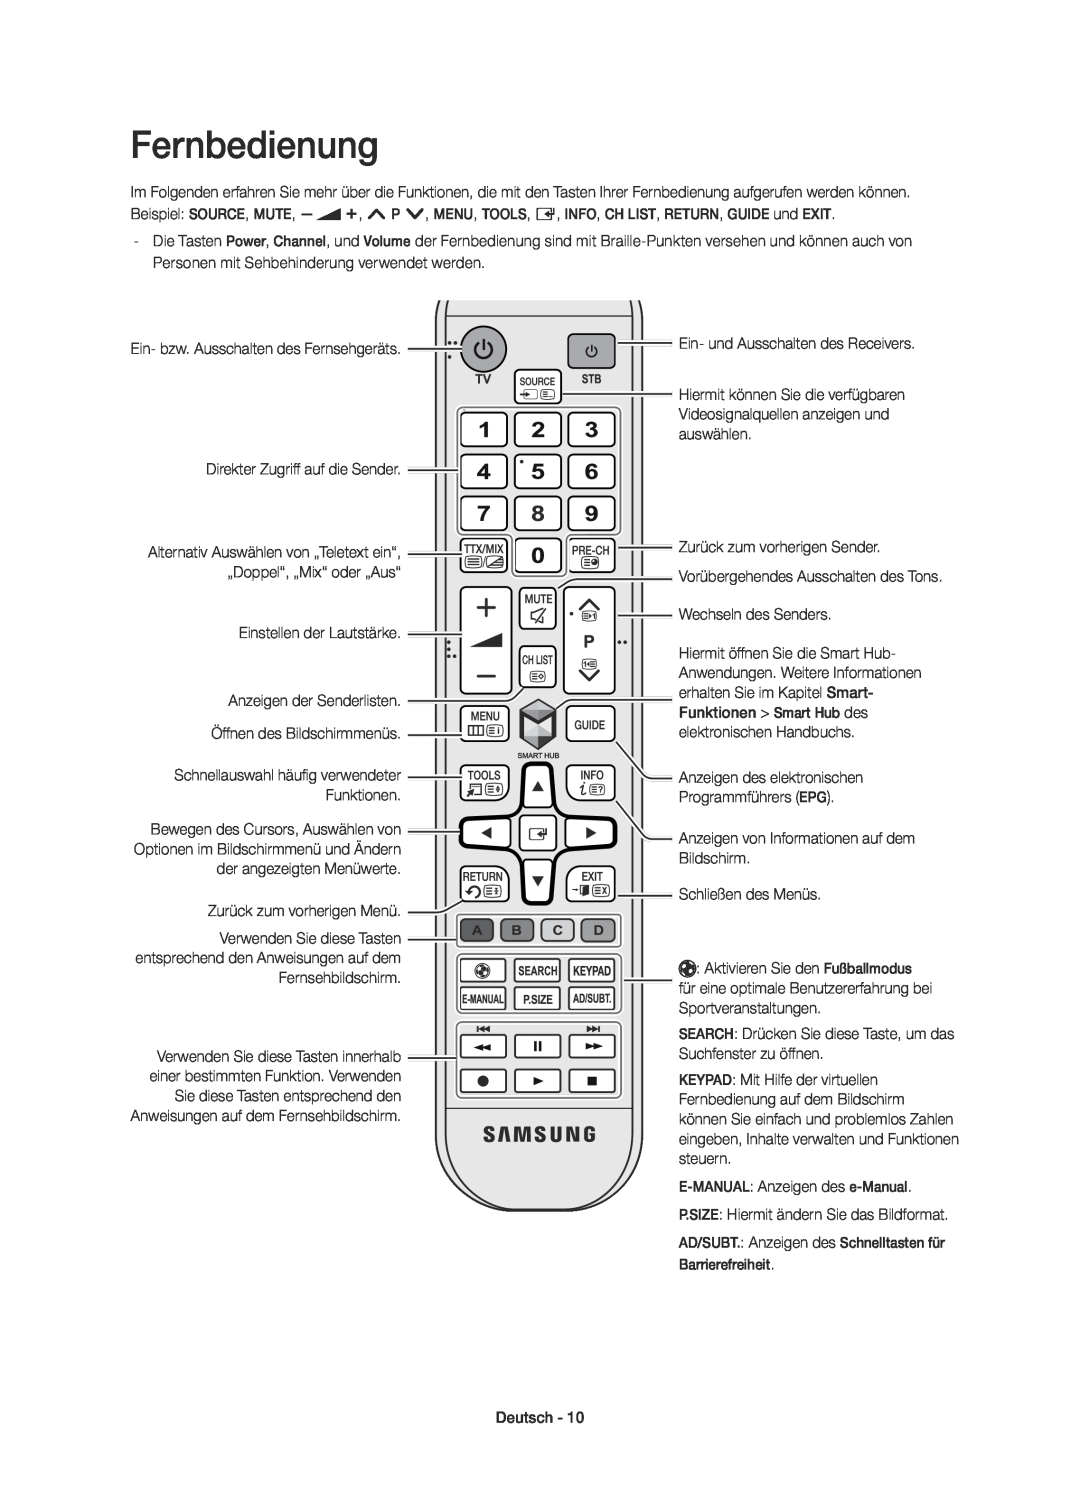 Samsung UE40H5303AWXTK manual Fernbedienung, Ein- und Ausschalten des Receivers, Bewegen des Cursors, Auswählen von 